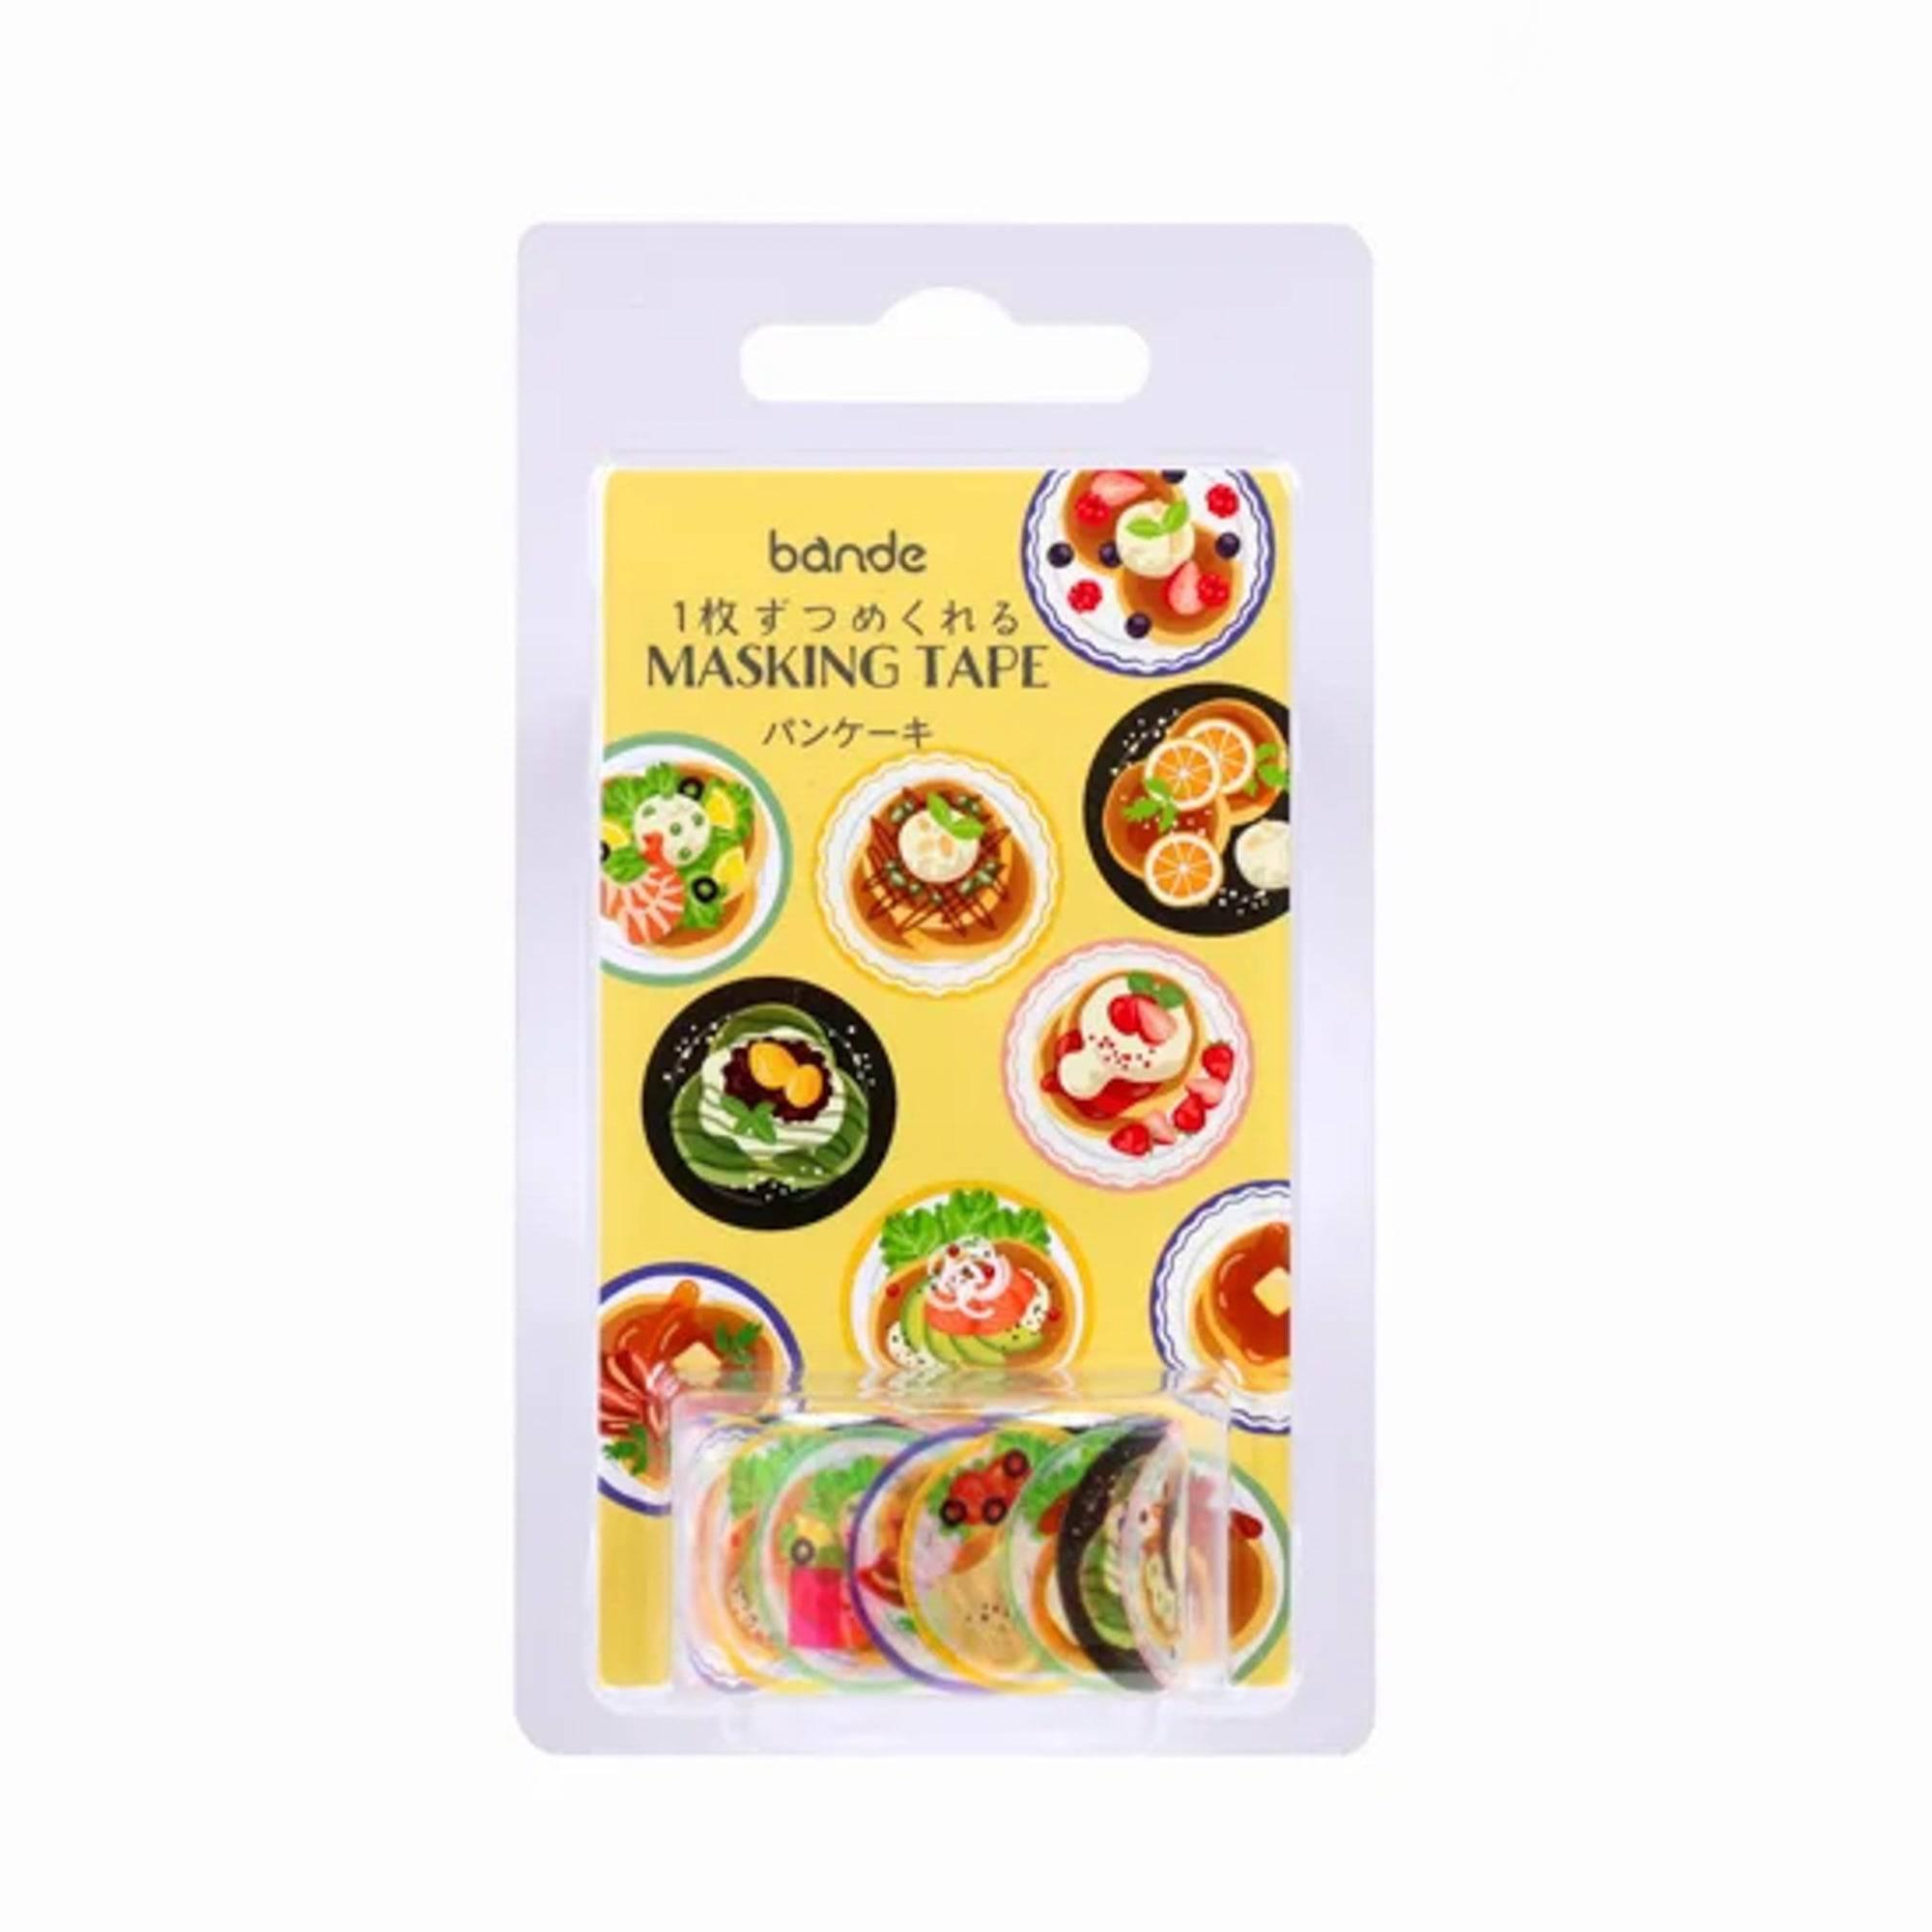 Pancake Washi Tape Sticker Roll - Bande - Komorebi Stationery